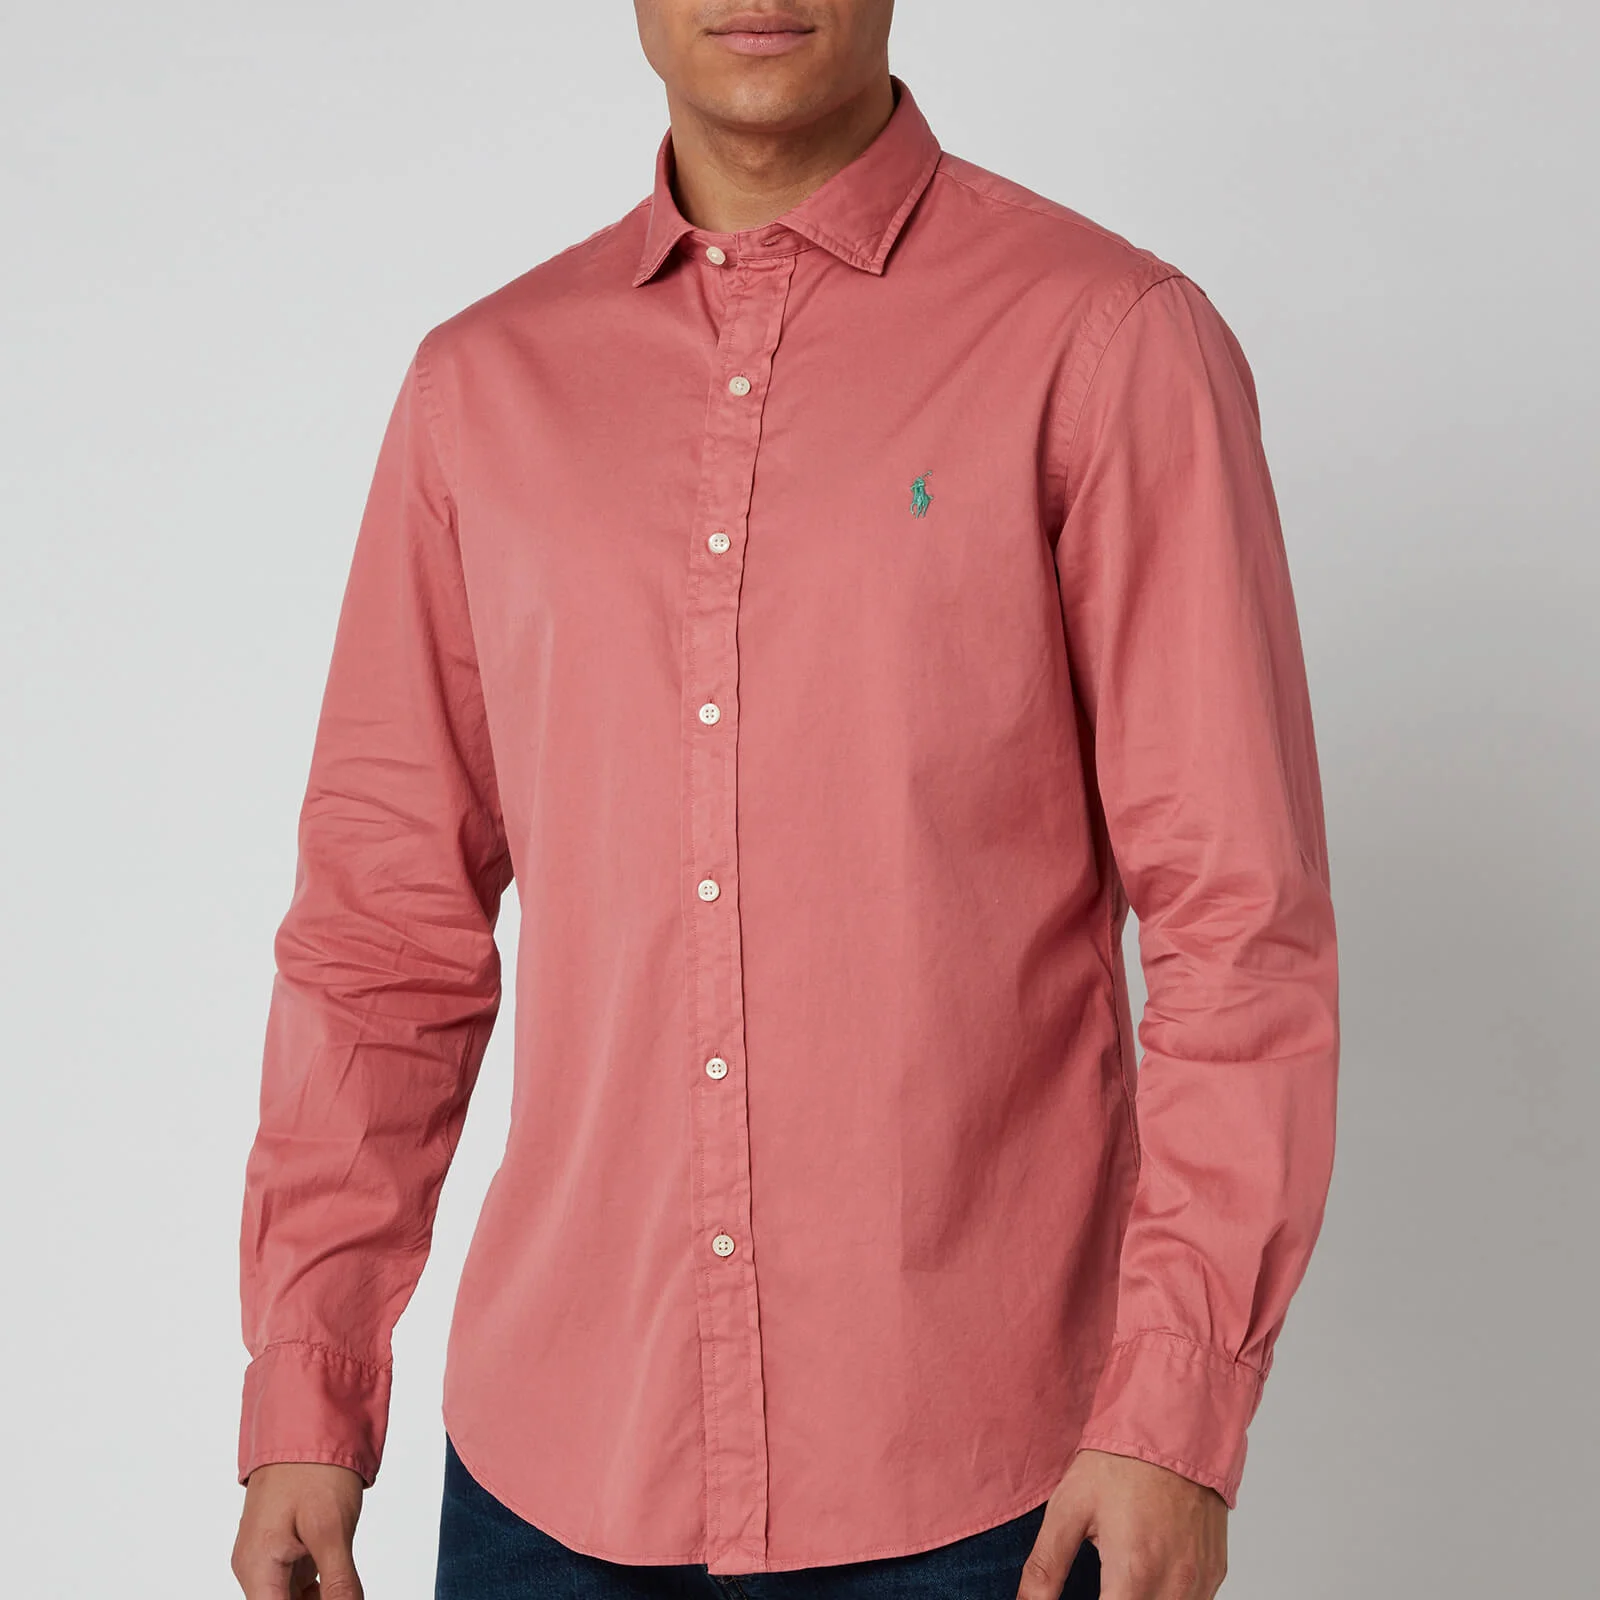 Polo Ralph Lauren Men's Long Sleeve Sport Shirt - Indian Pink Image 1